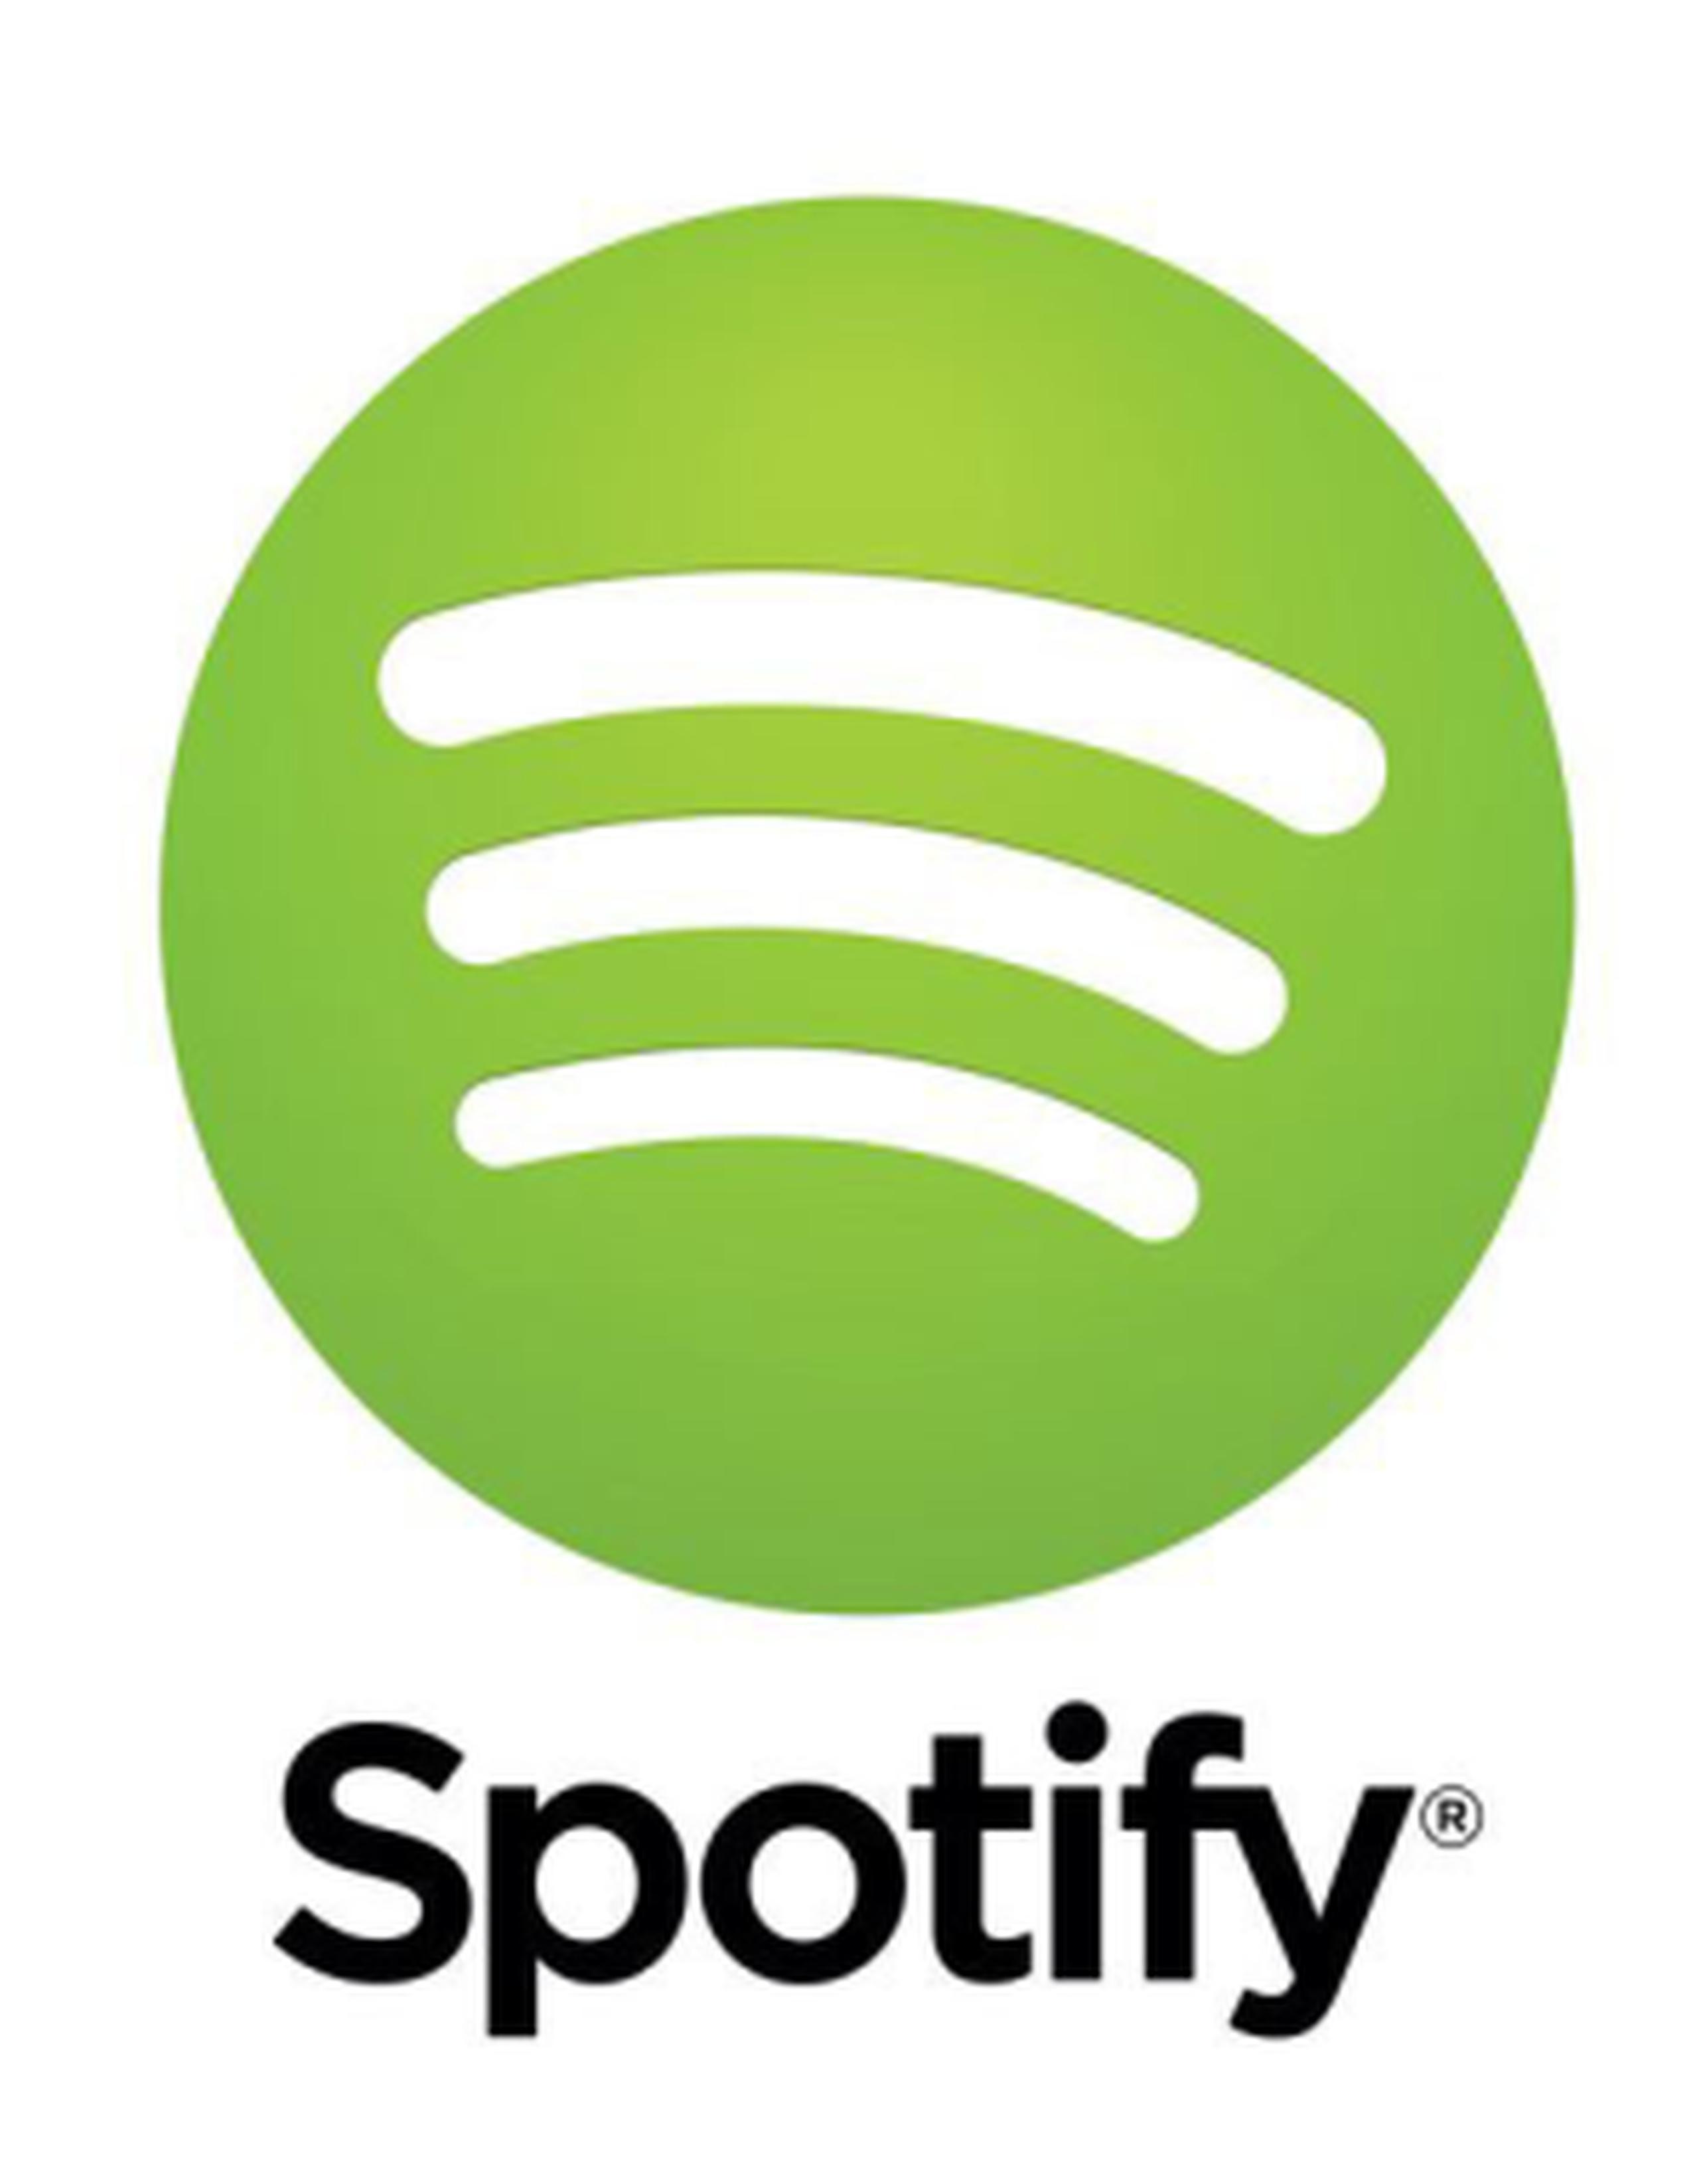 Spotify, presente en 58 mercados, tiene una comunidad de 75 millones de usuarios, 20 millones de los cuales pagan por su cuenta. (Archivo)